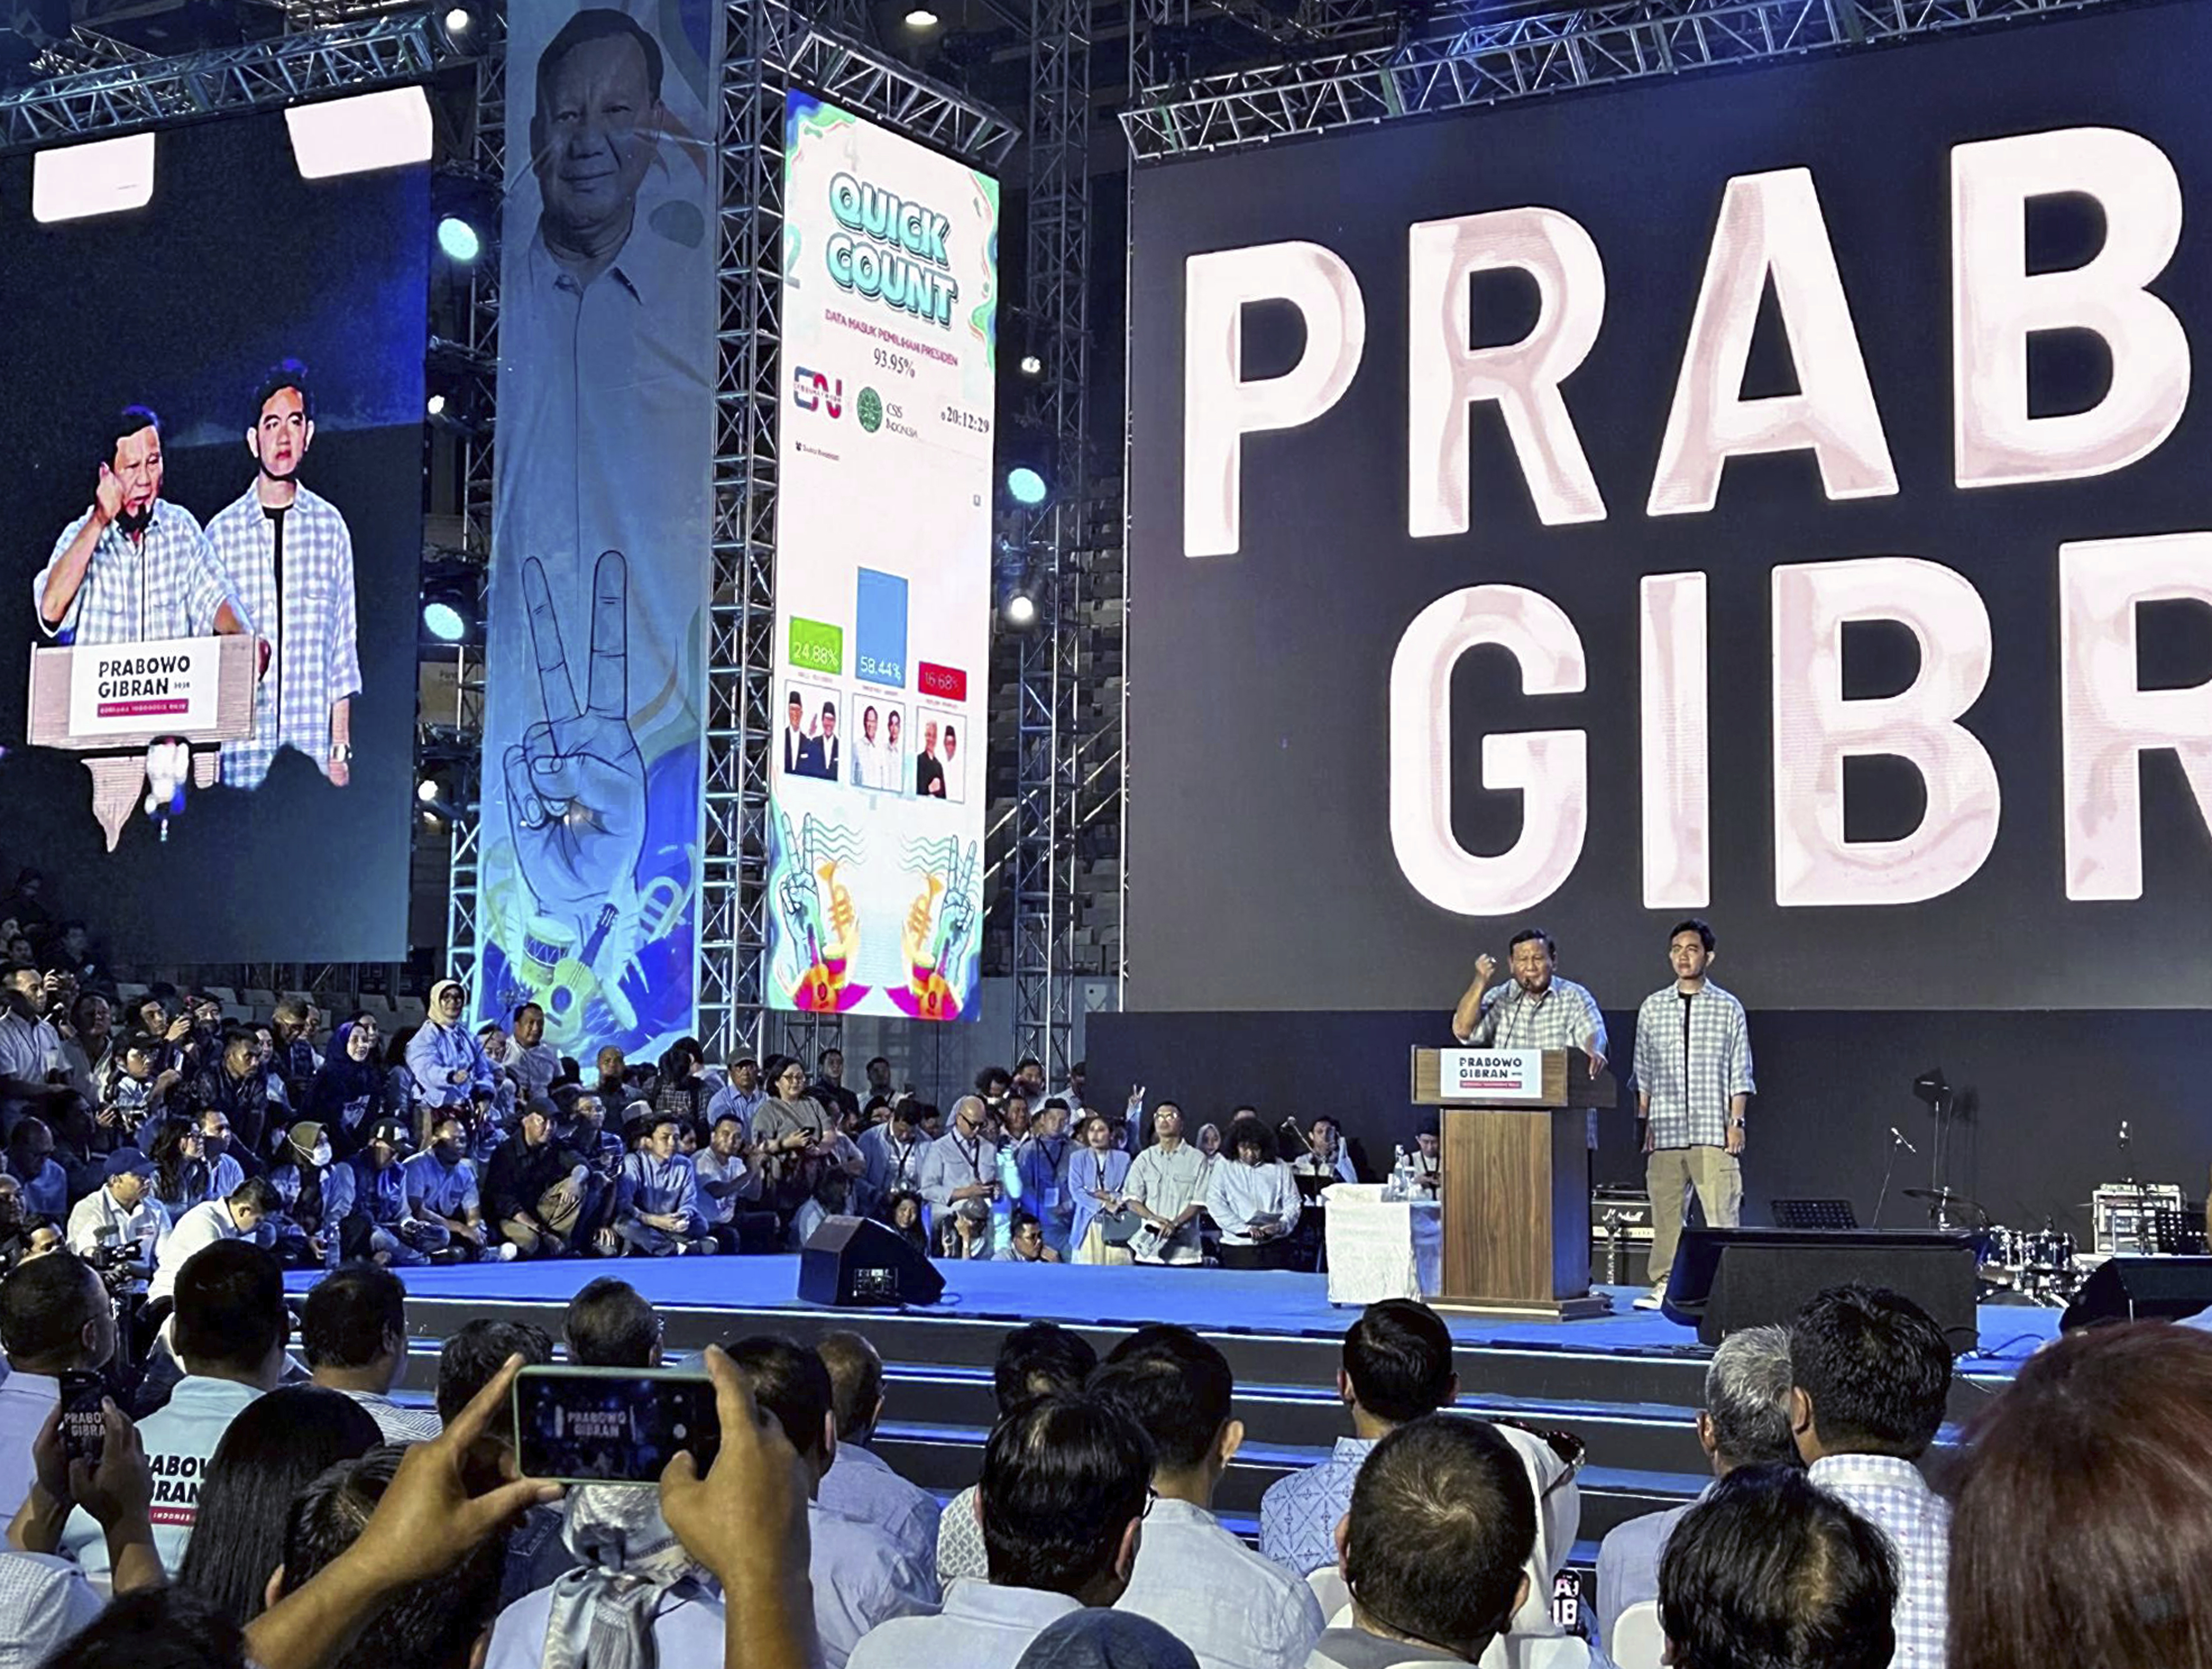 Prabowo Subianto erklärt seinen Sieg bei den indonesischen Präsidentschaftswahlen zusammen mit seinem ältesten Sohn, der Vizepräsident sein wird, in Jakarta, Indonesien